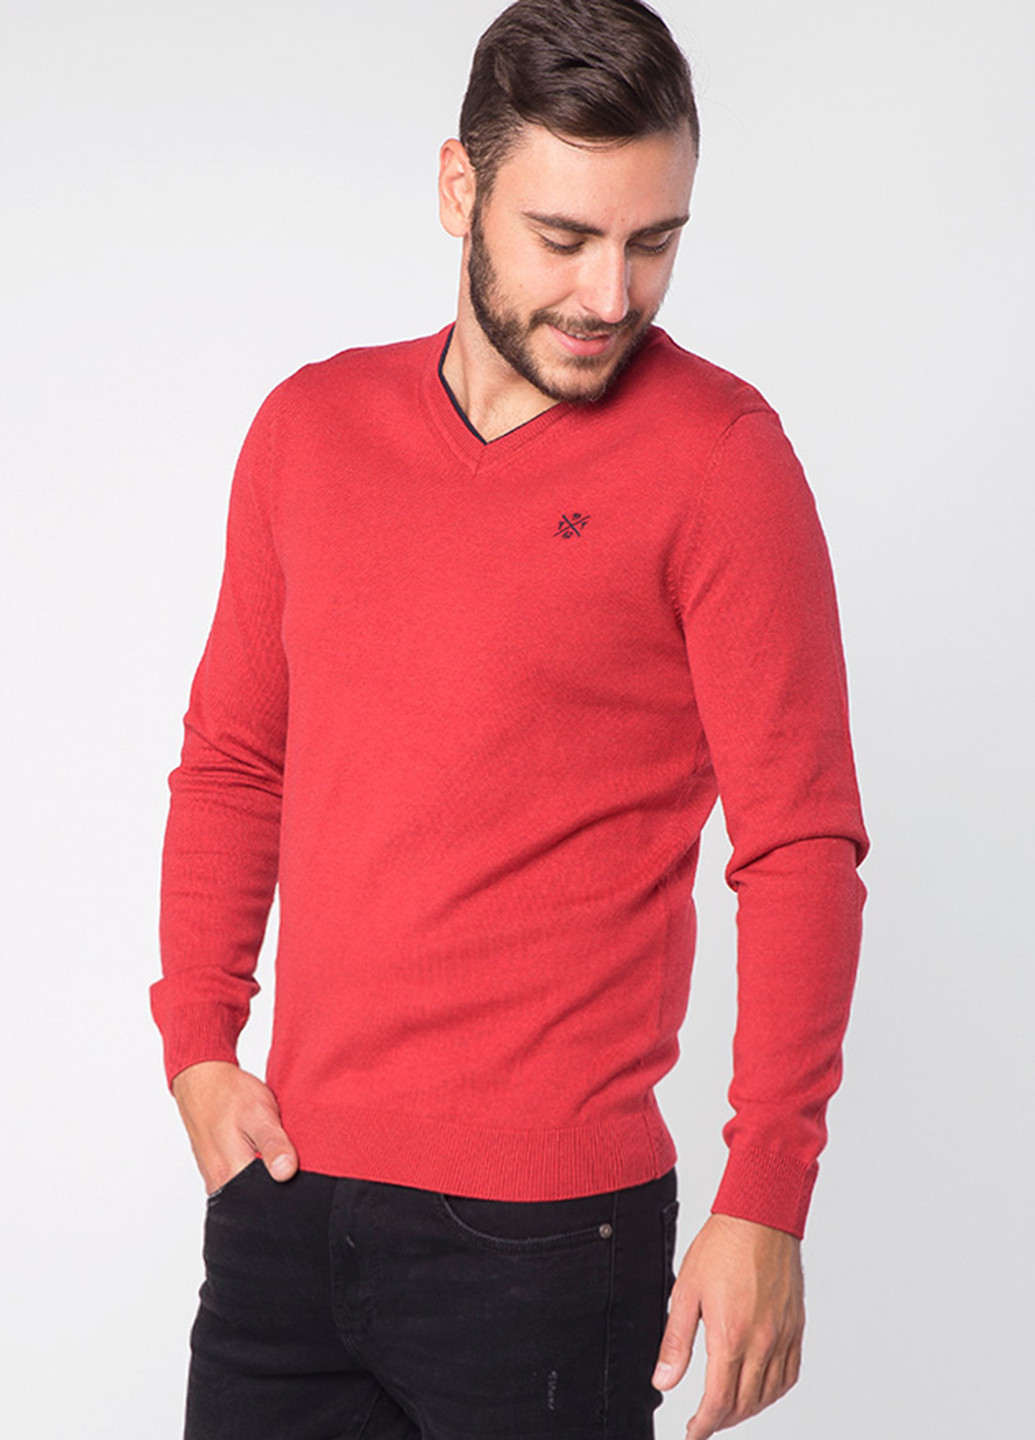 Коралловый демисезонный пуловер пуловер Tom Tailor